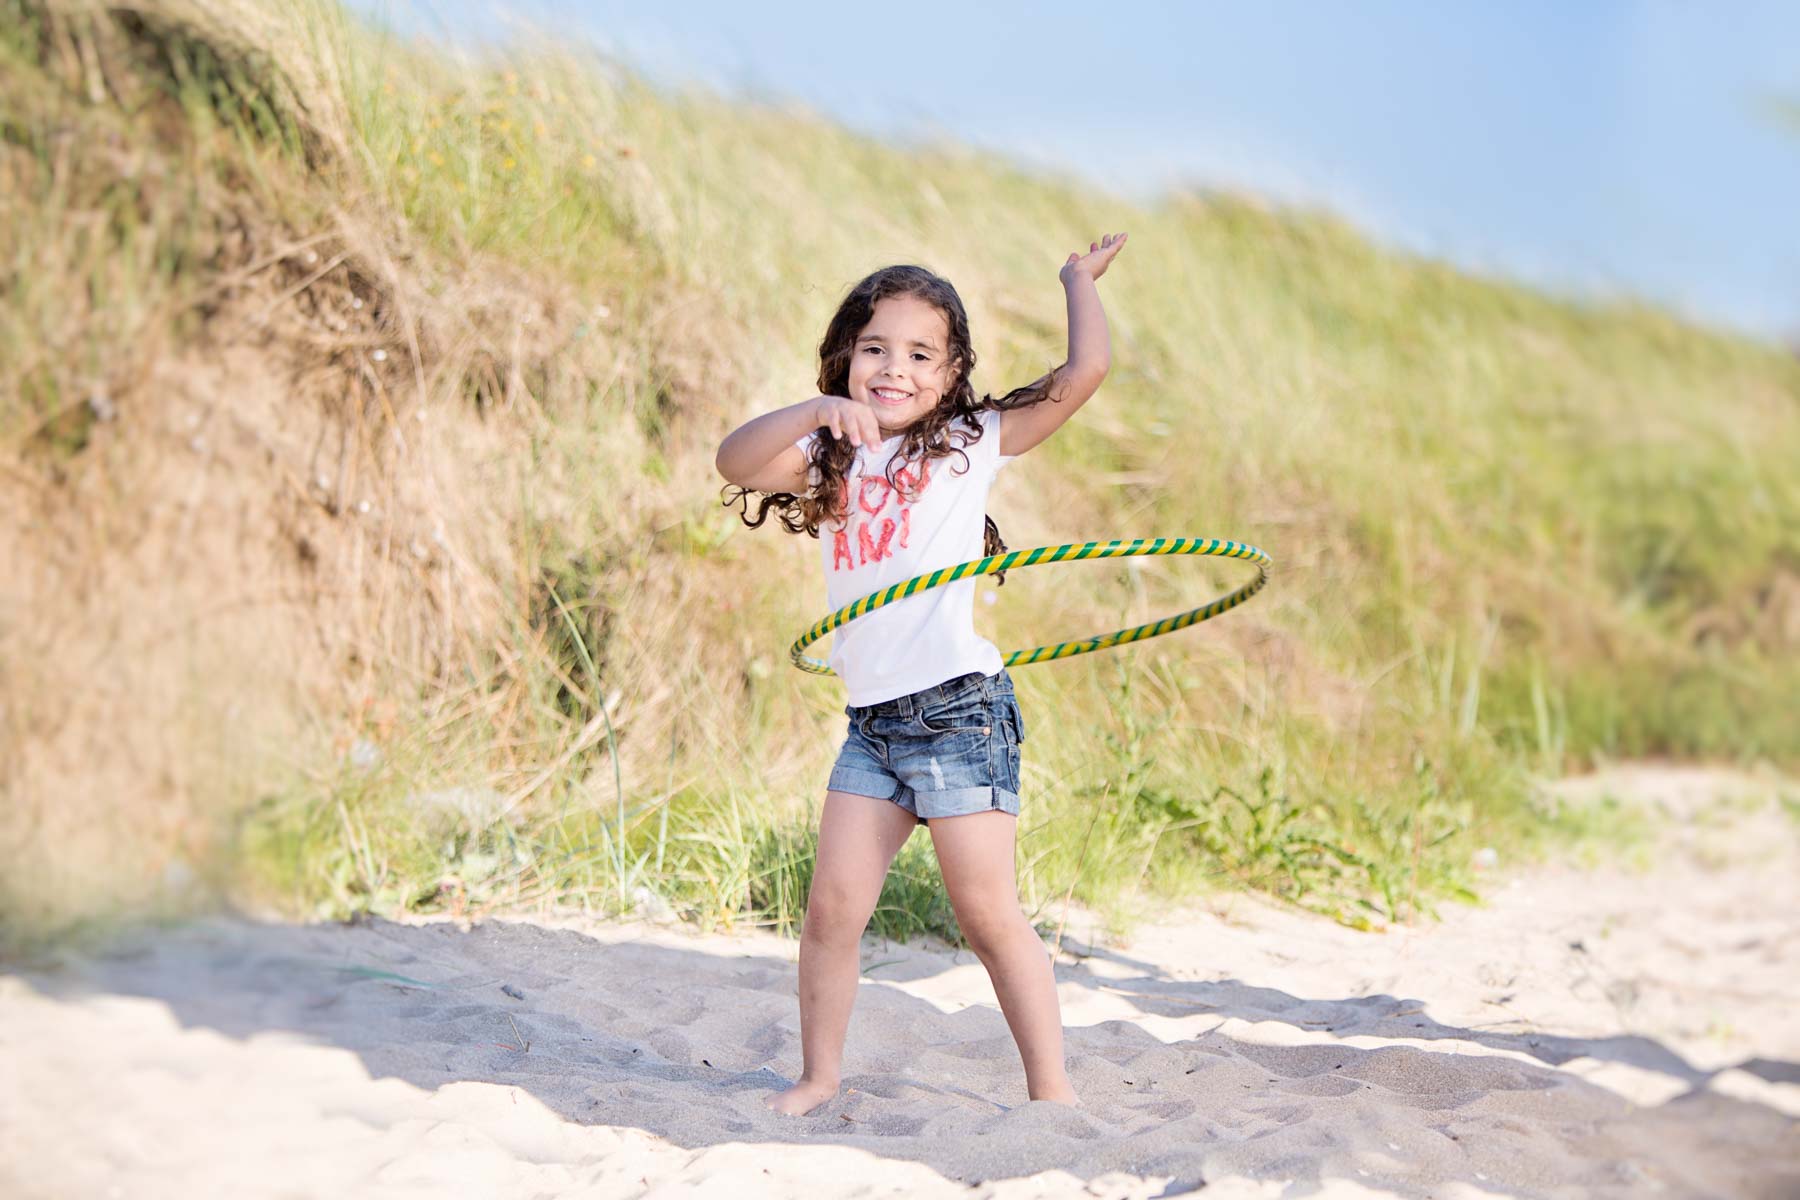 Girl playing with hula hoop